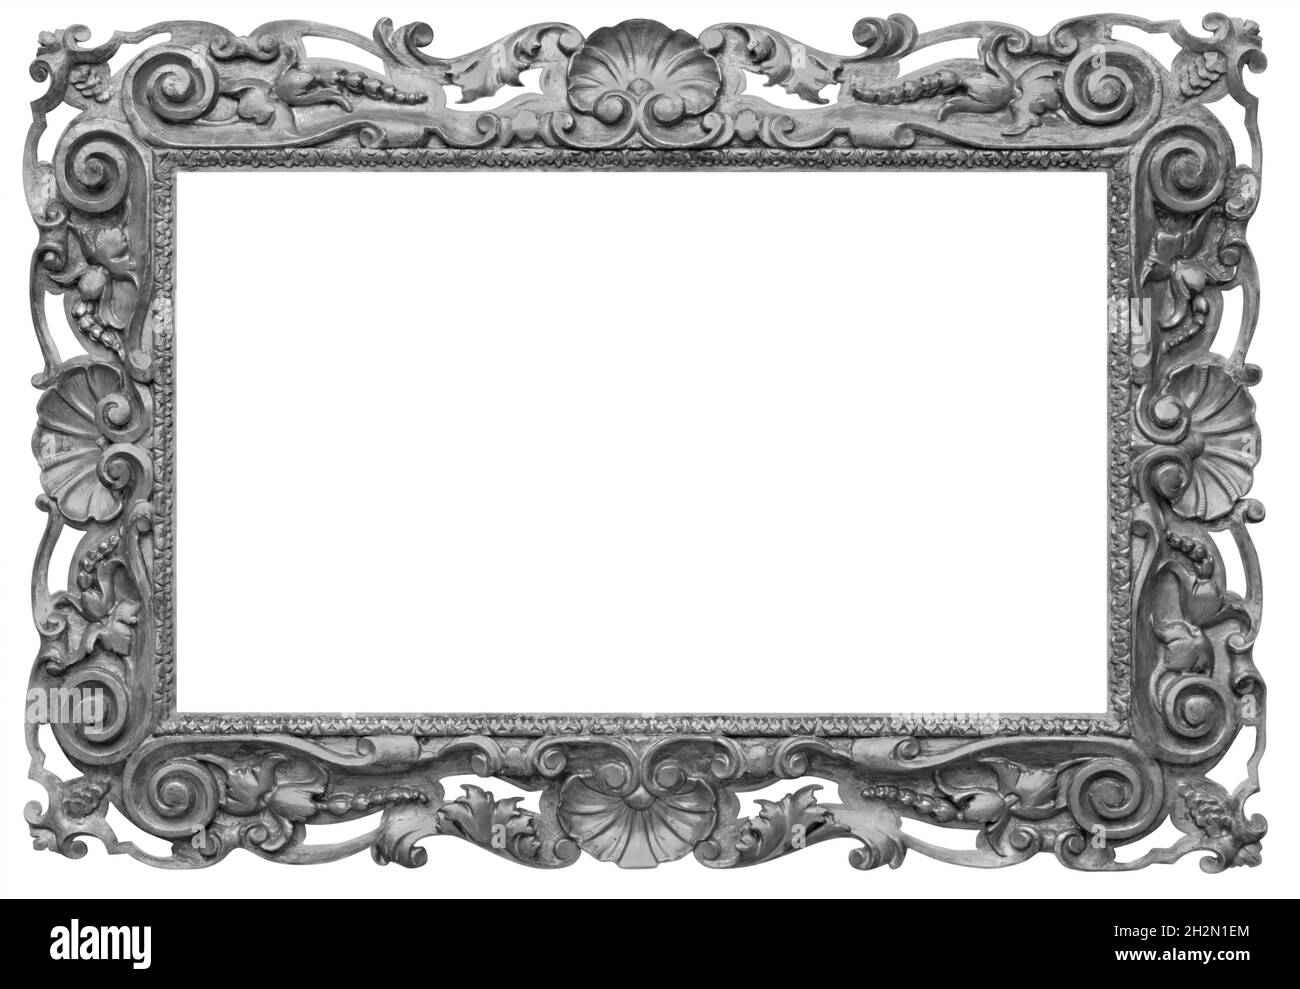 Holz Vintage rechteckig versilbert, Silber antik leeren Bilderrahmen,  isoliert auf weißem Hintergrund Stockfotografie - Alamy